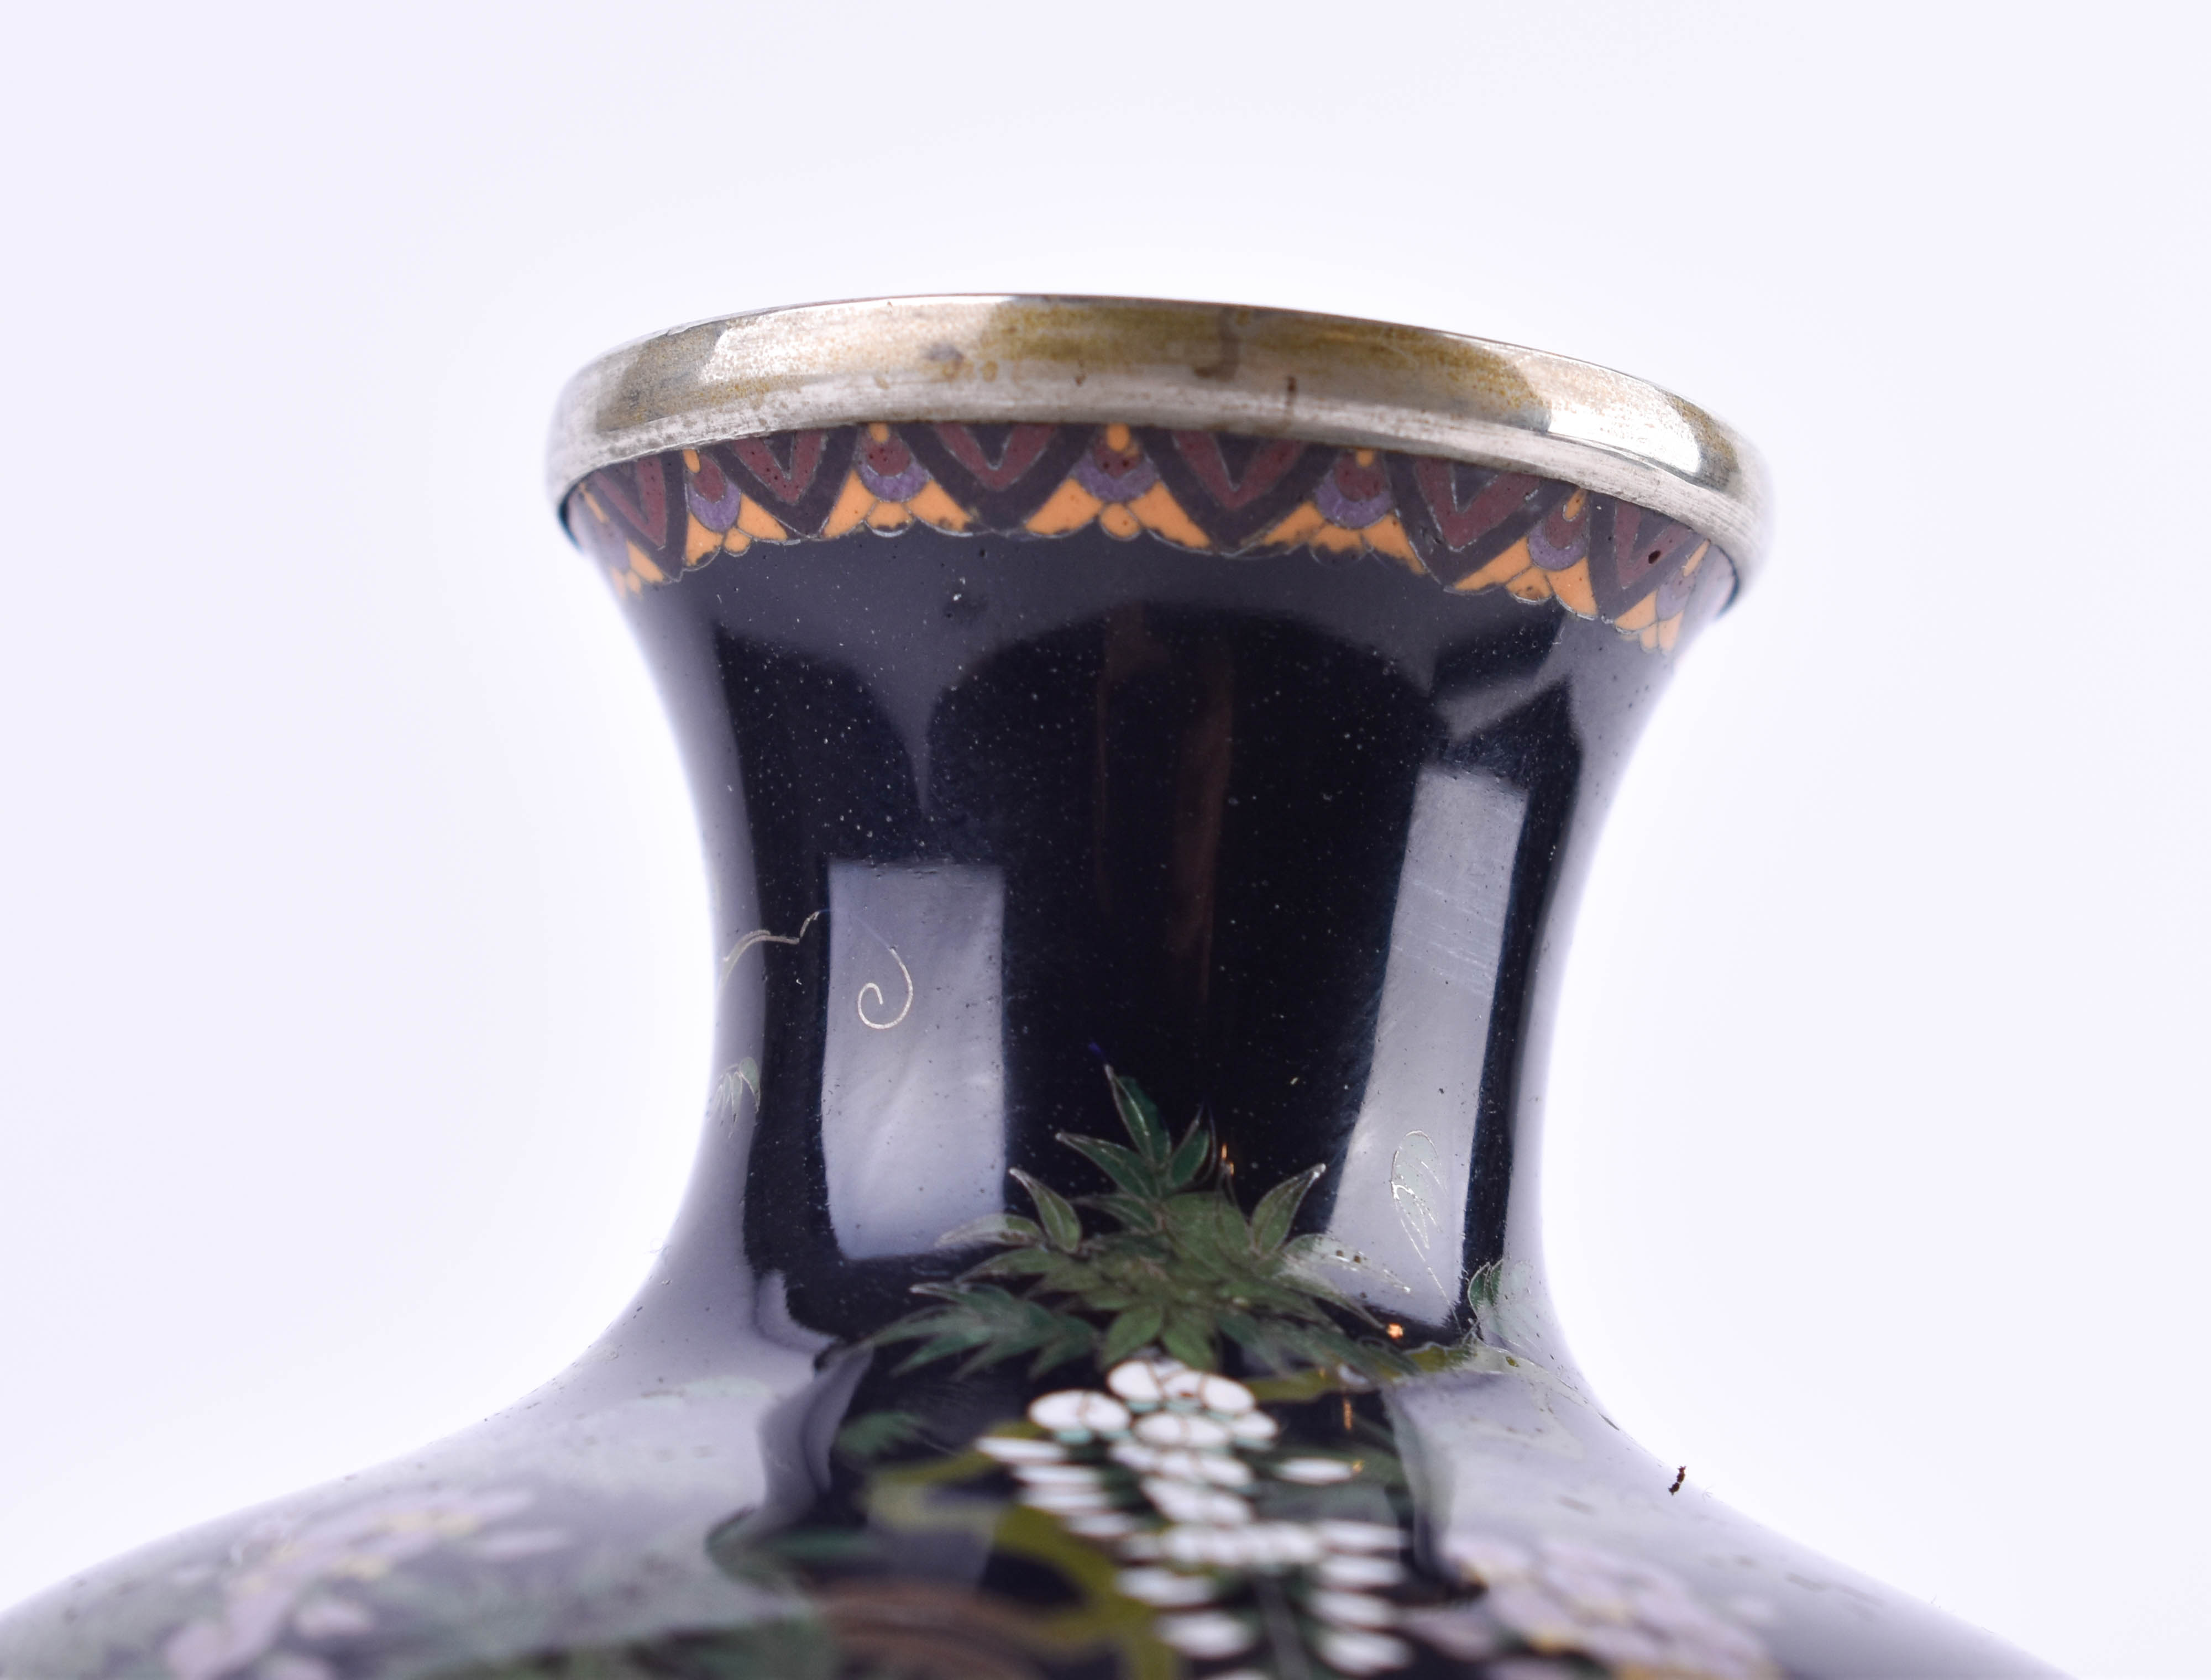  Cloisonne vase Japan Meiji period - Image 10 of 12